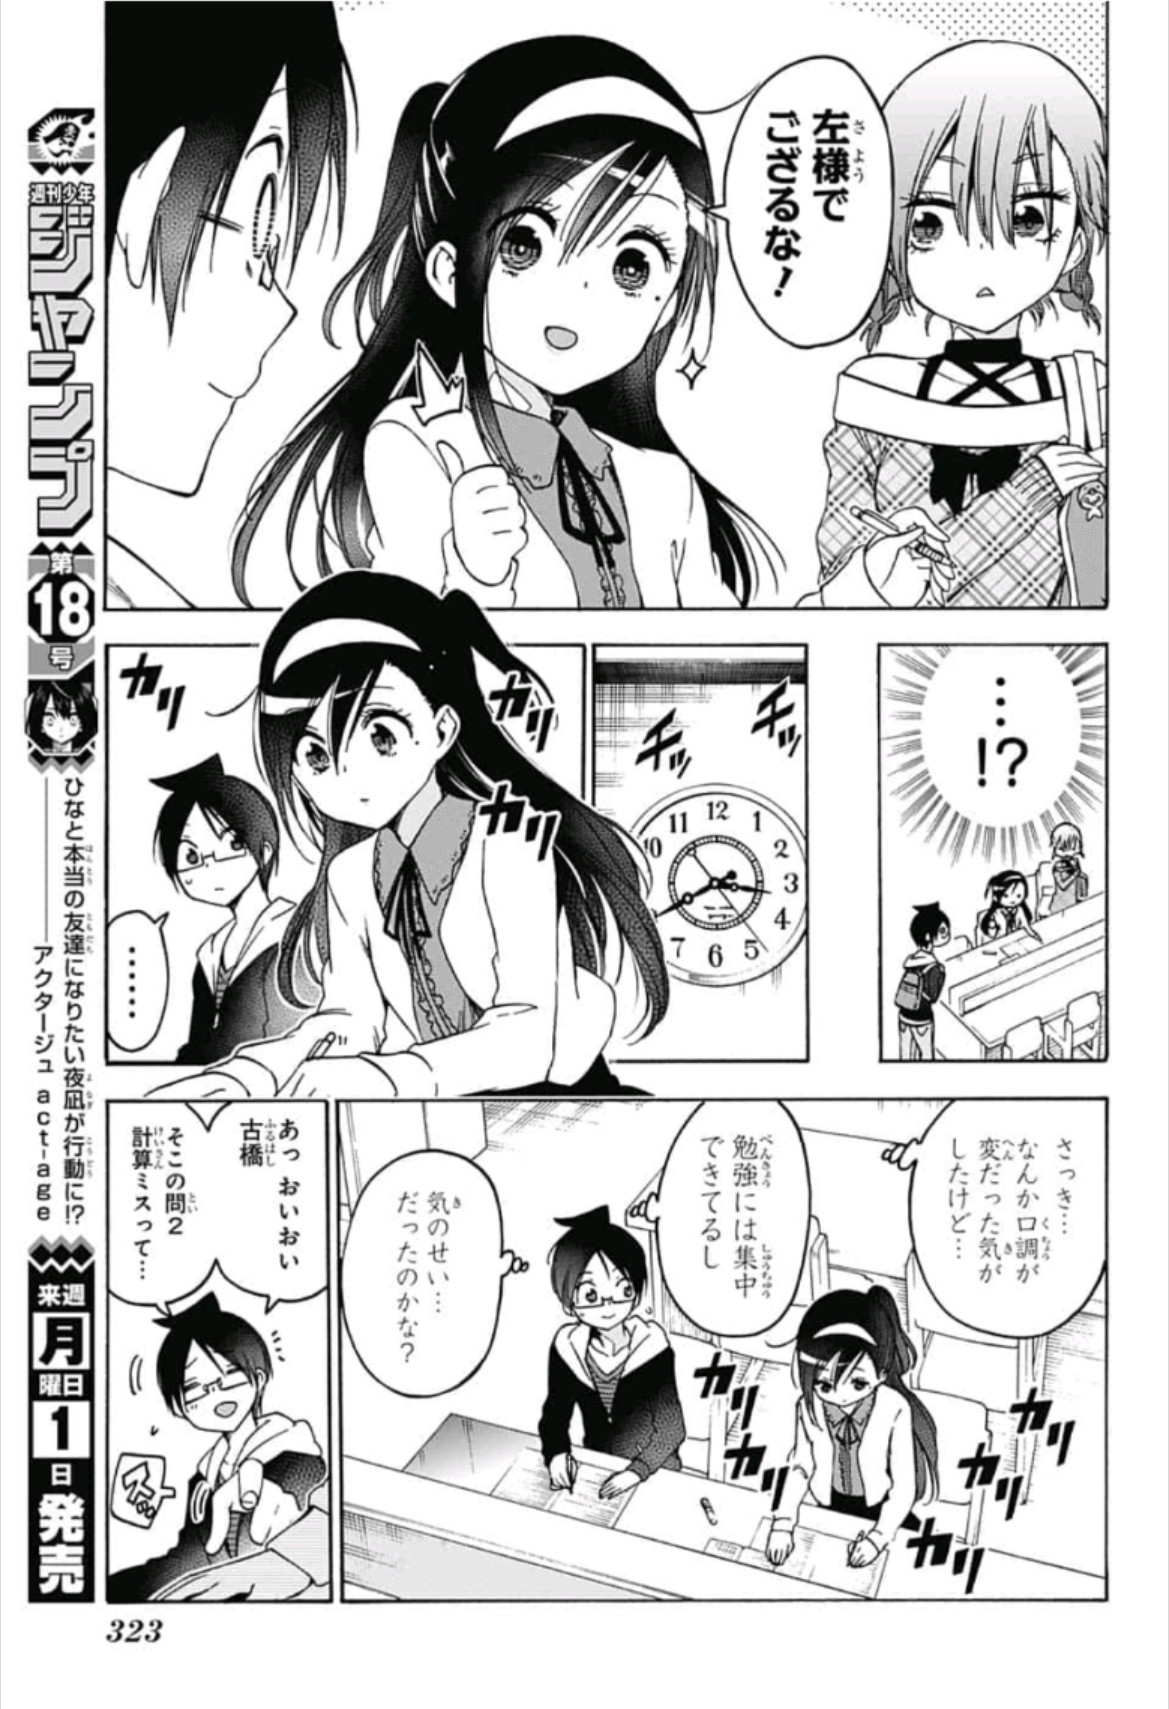 Bokutachi wa Benkyou ga Dekinai - Chapter 104 - Page 7